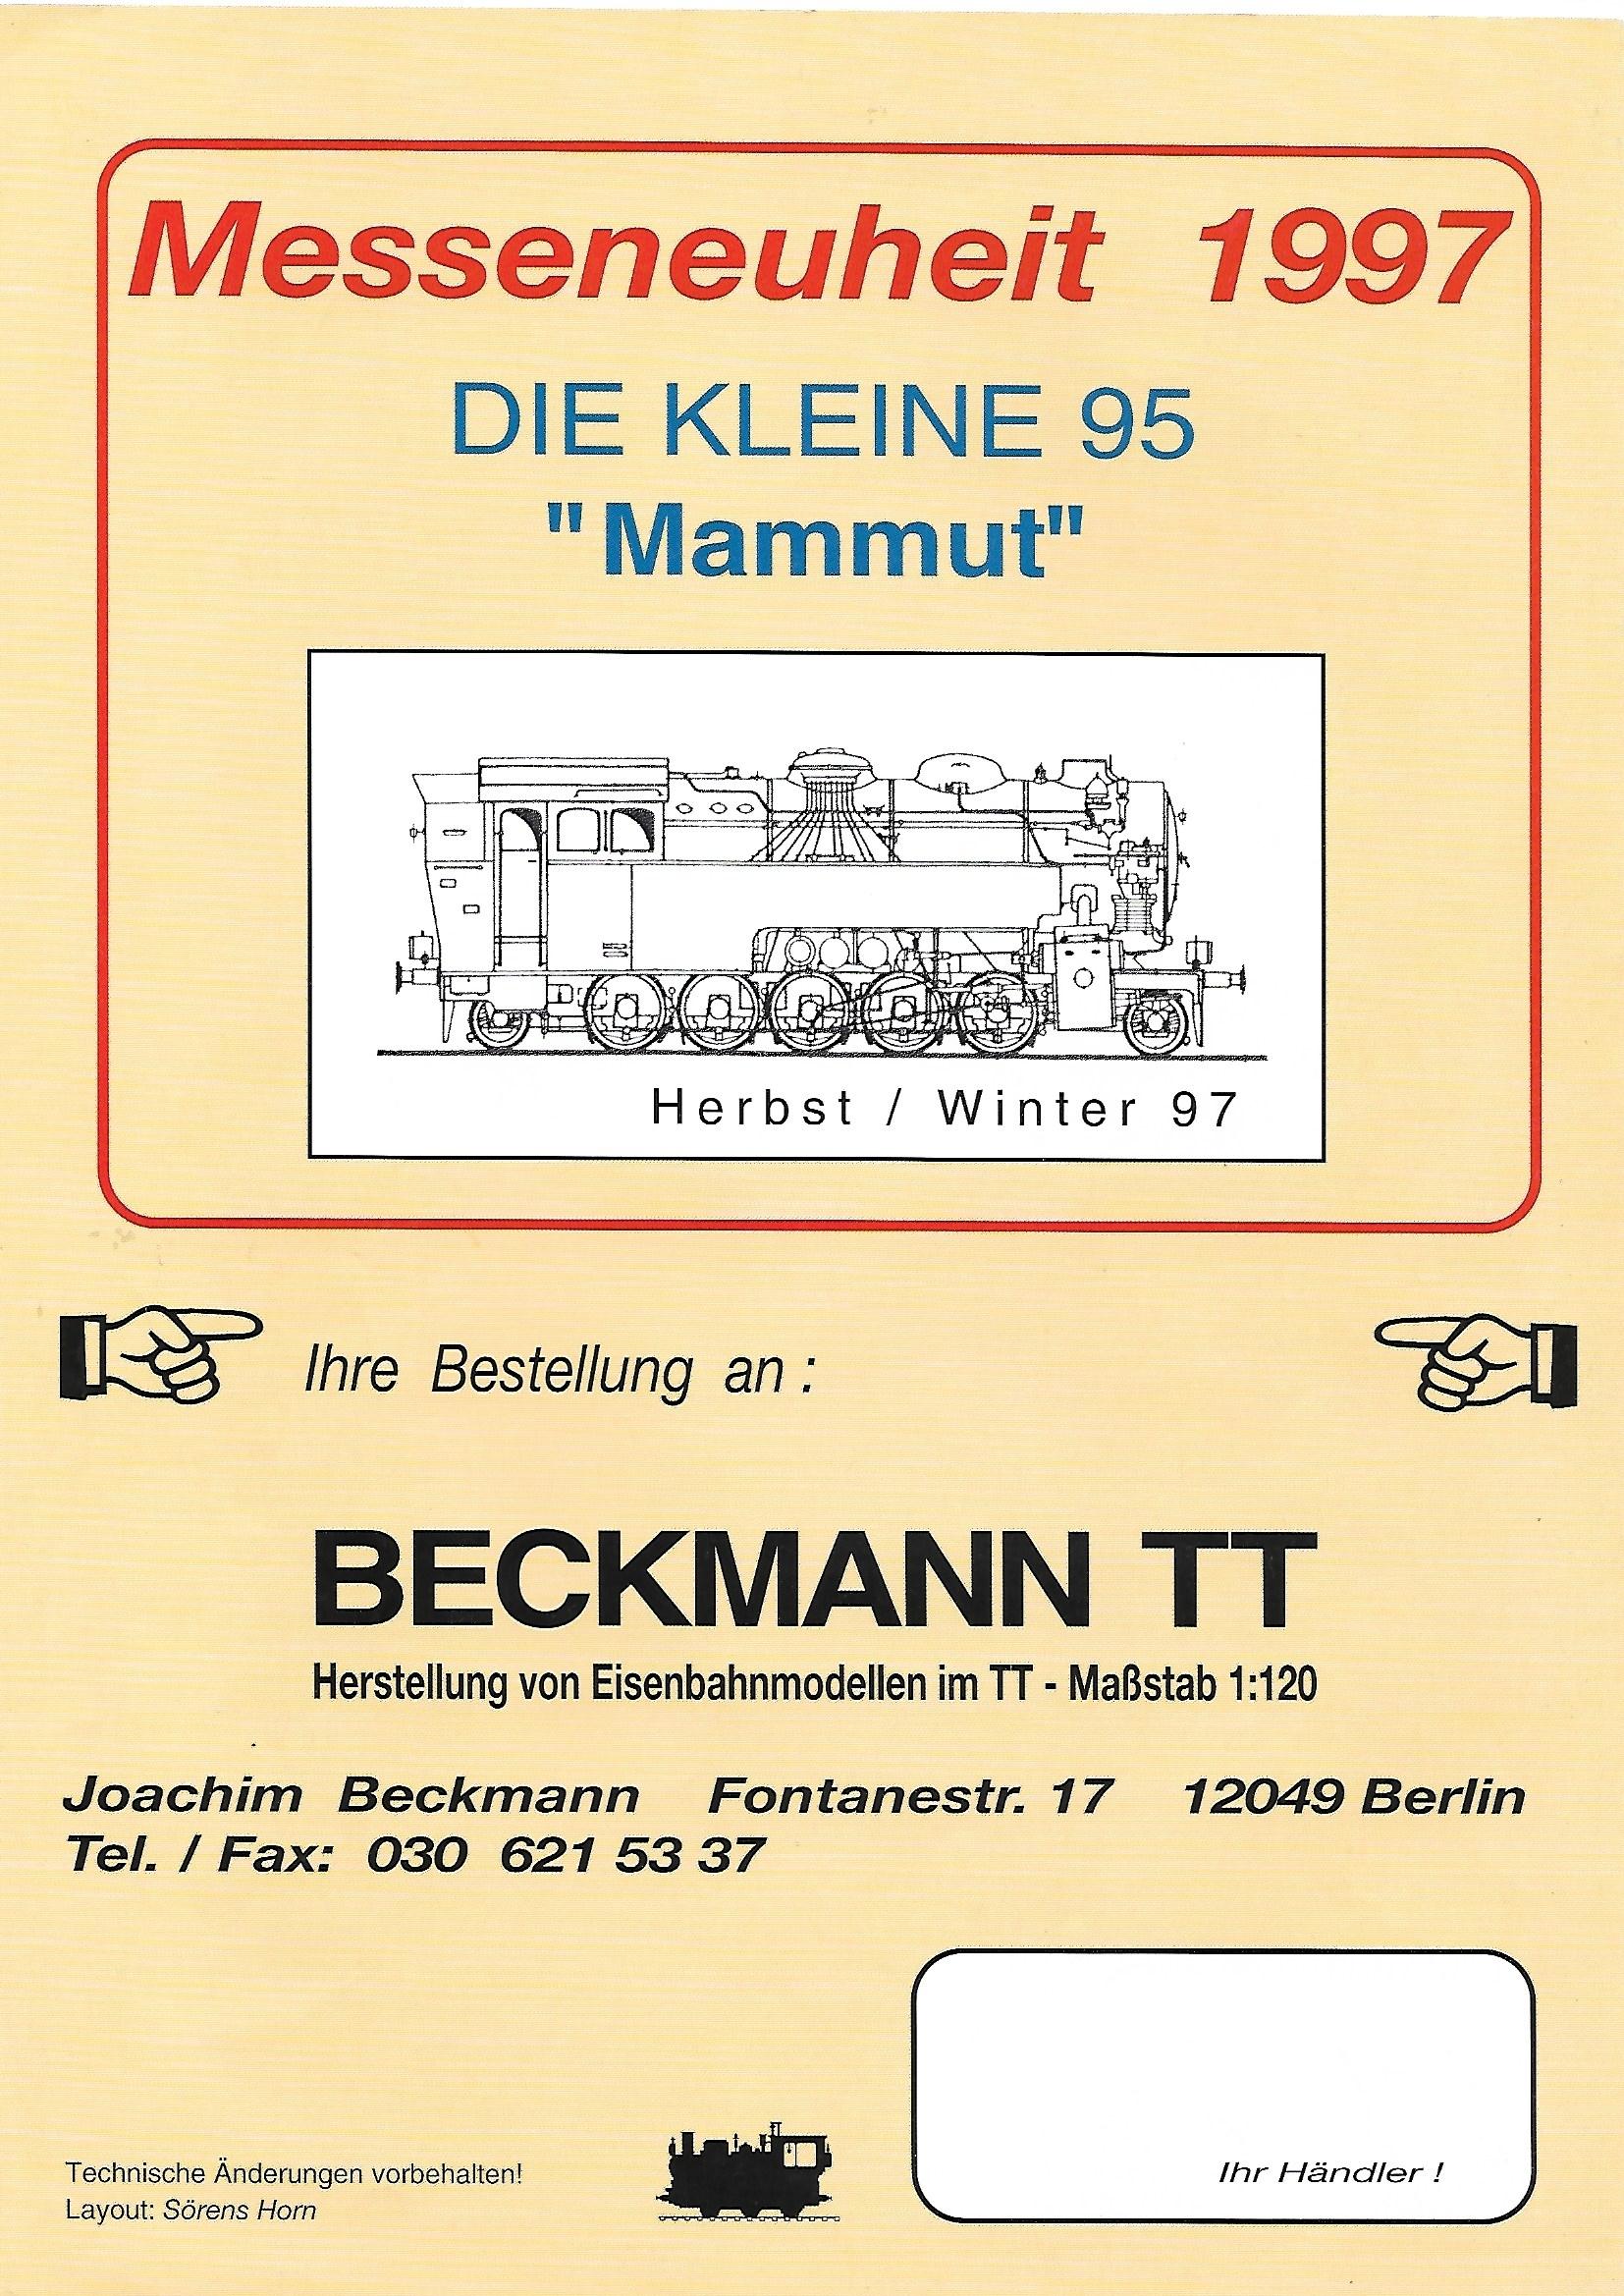 Каталог фирмы Beckmann 1997 г., страница 4